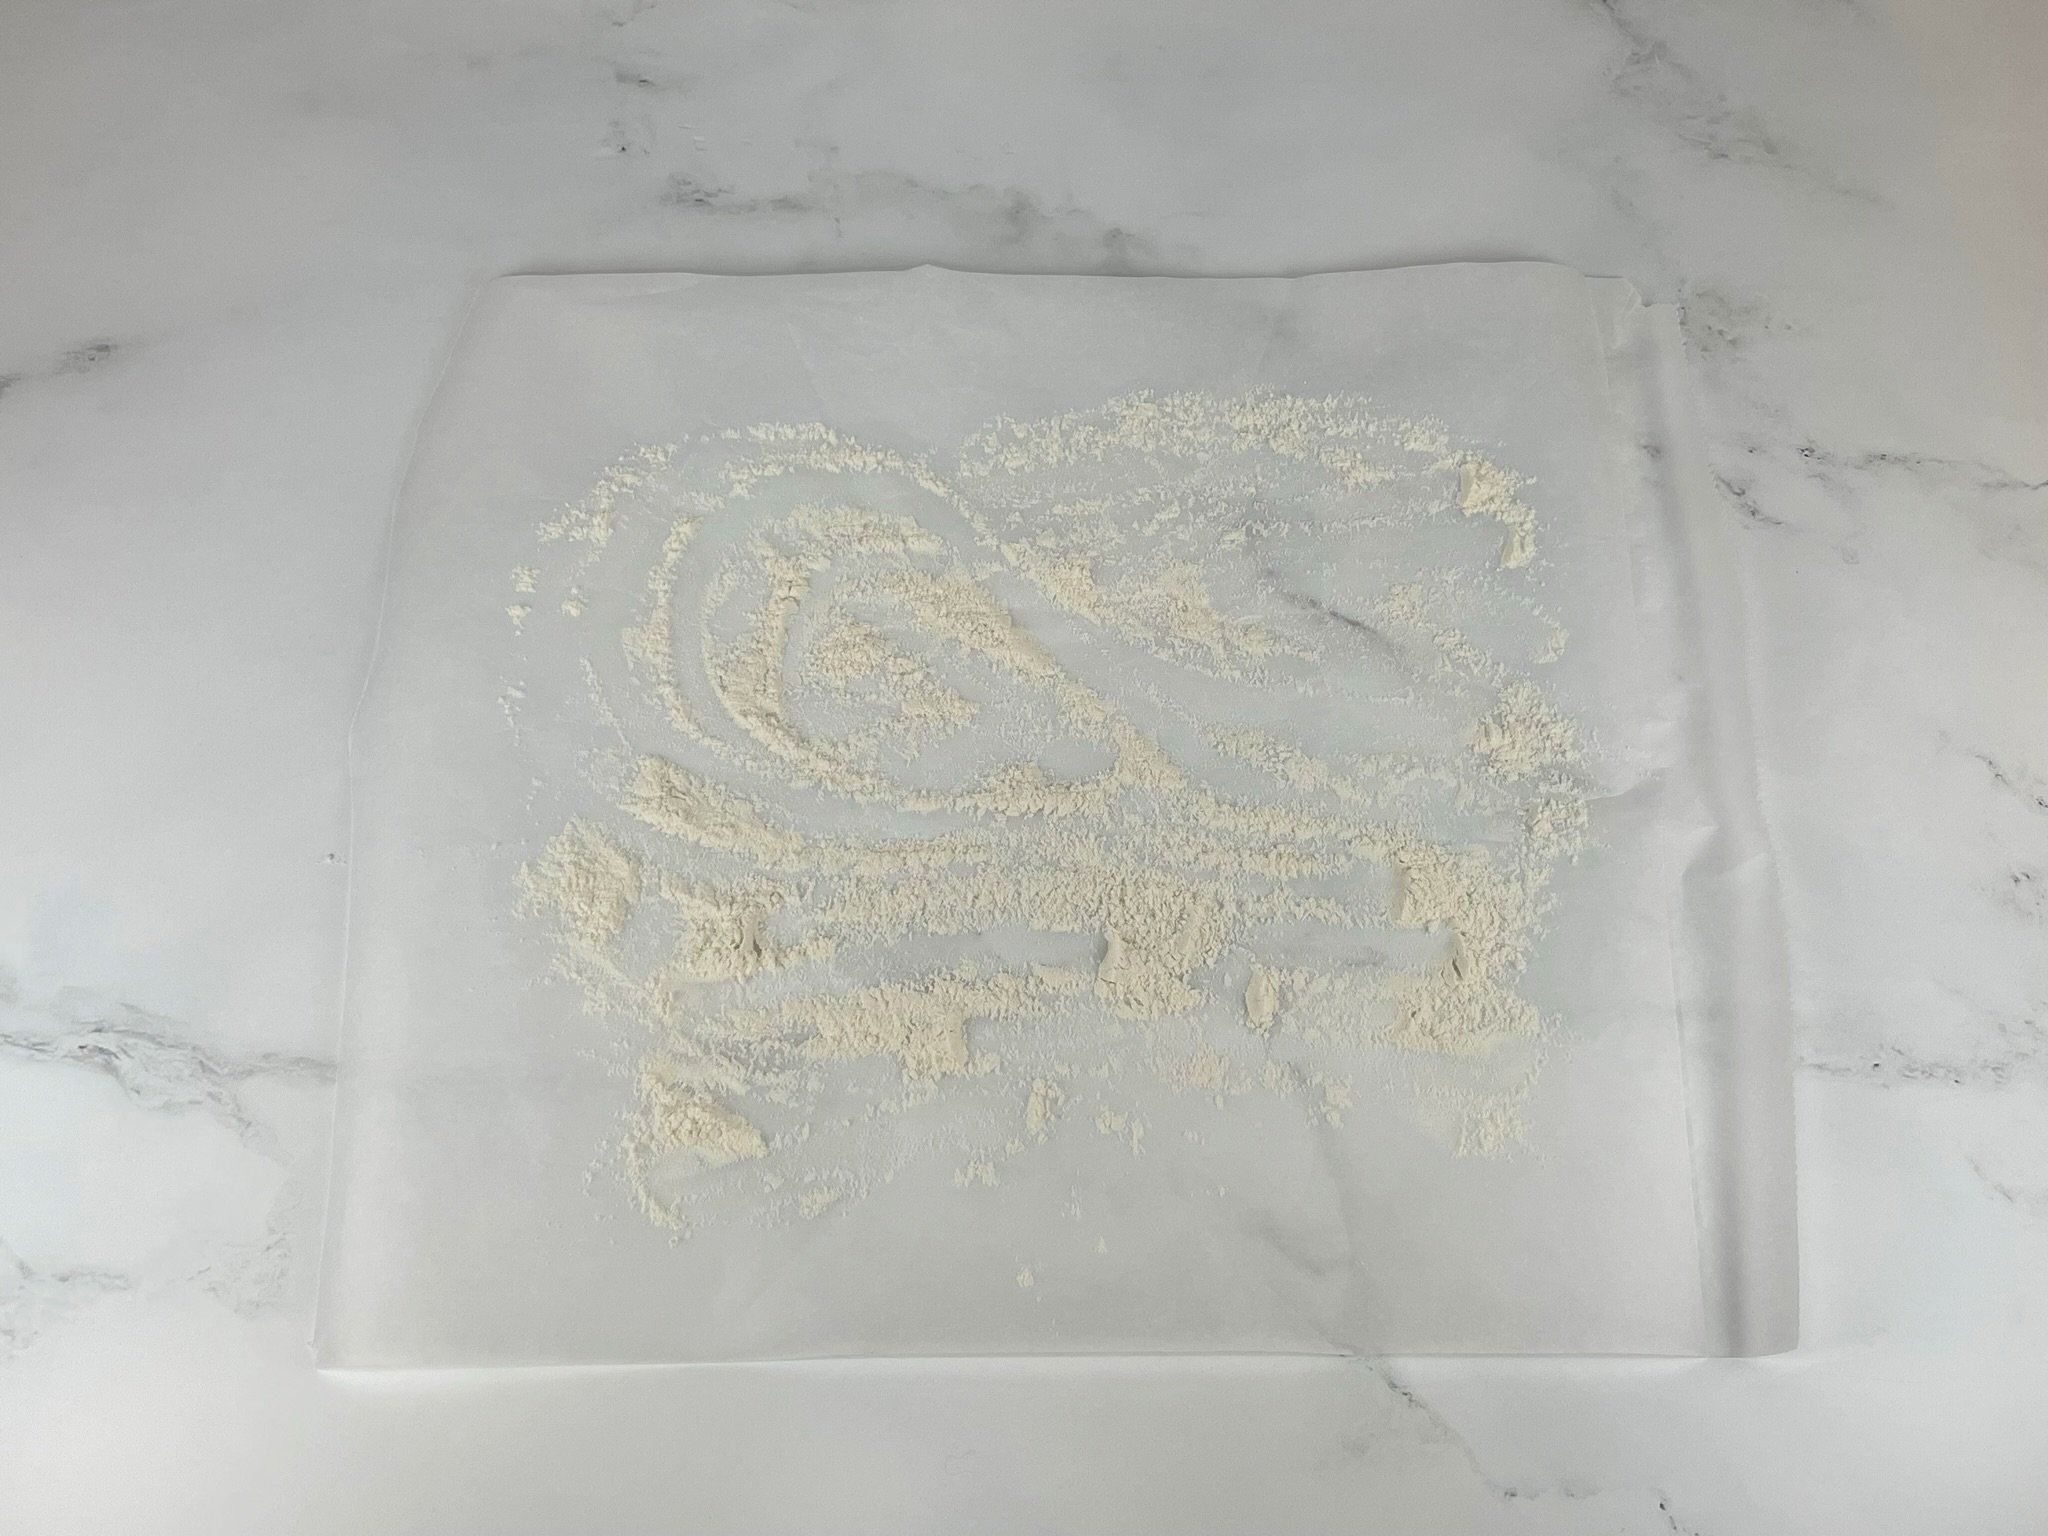 Flour on parchment.